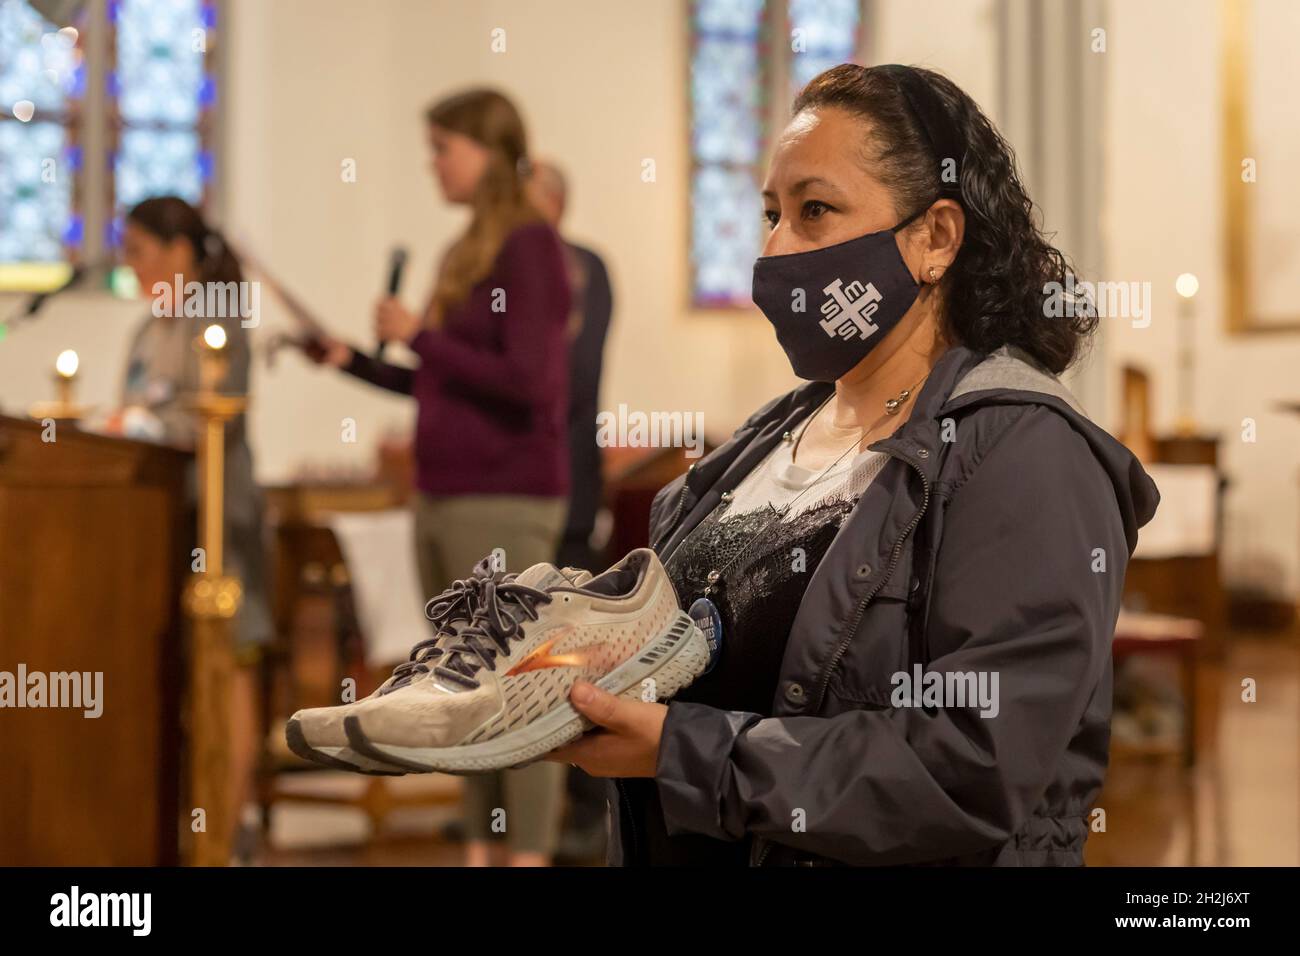 Detroit, Michigan - pendant la messe de la plupart des églises catholiques de la Sainte-Trinité, Nancy Juarez tient les chaussures qu'un réfugié portait lorsqu'elle voyage du Guatemala Banque D'Images